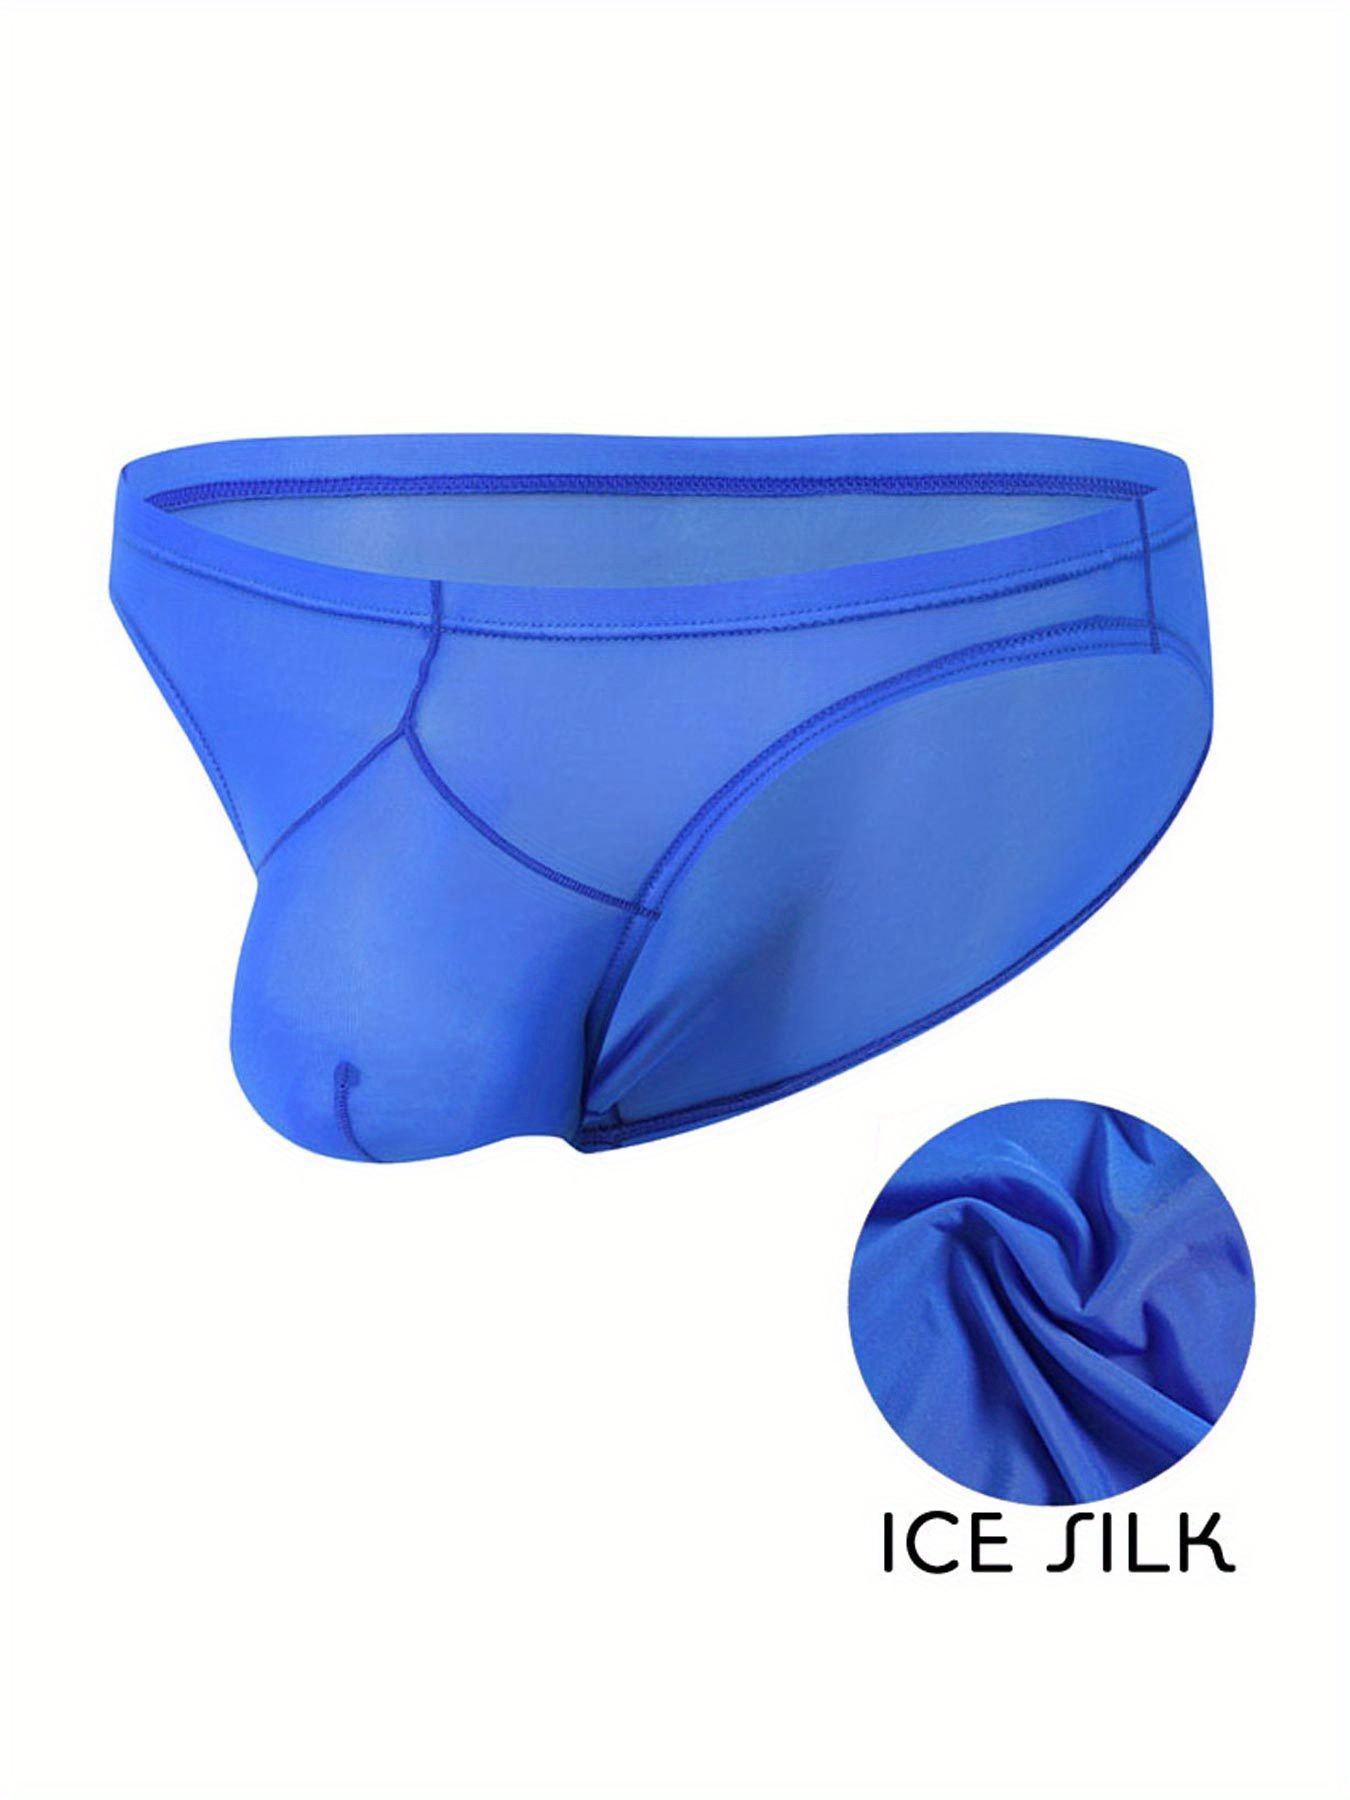 Women's Ice Silk Panties Seamless Panty Bikini Smooth Stretch